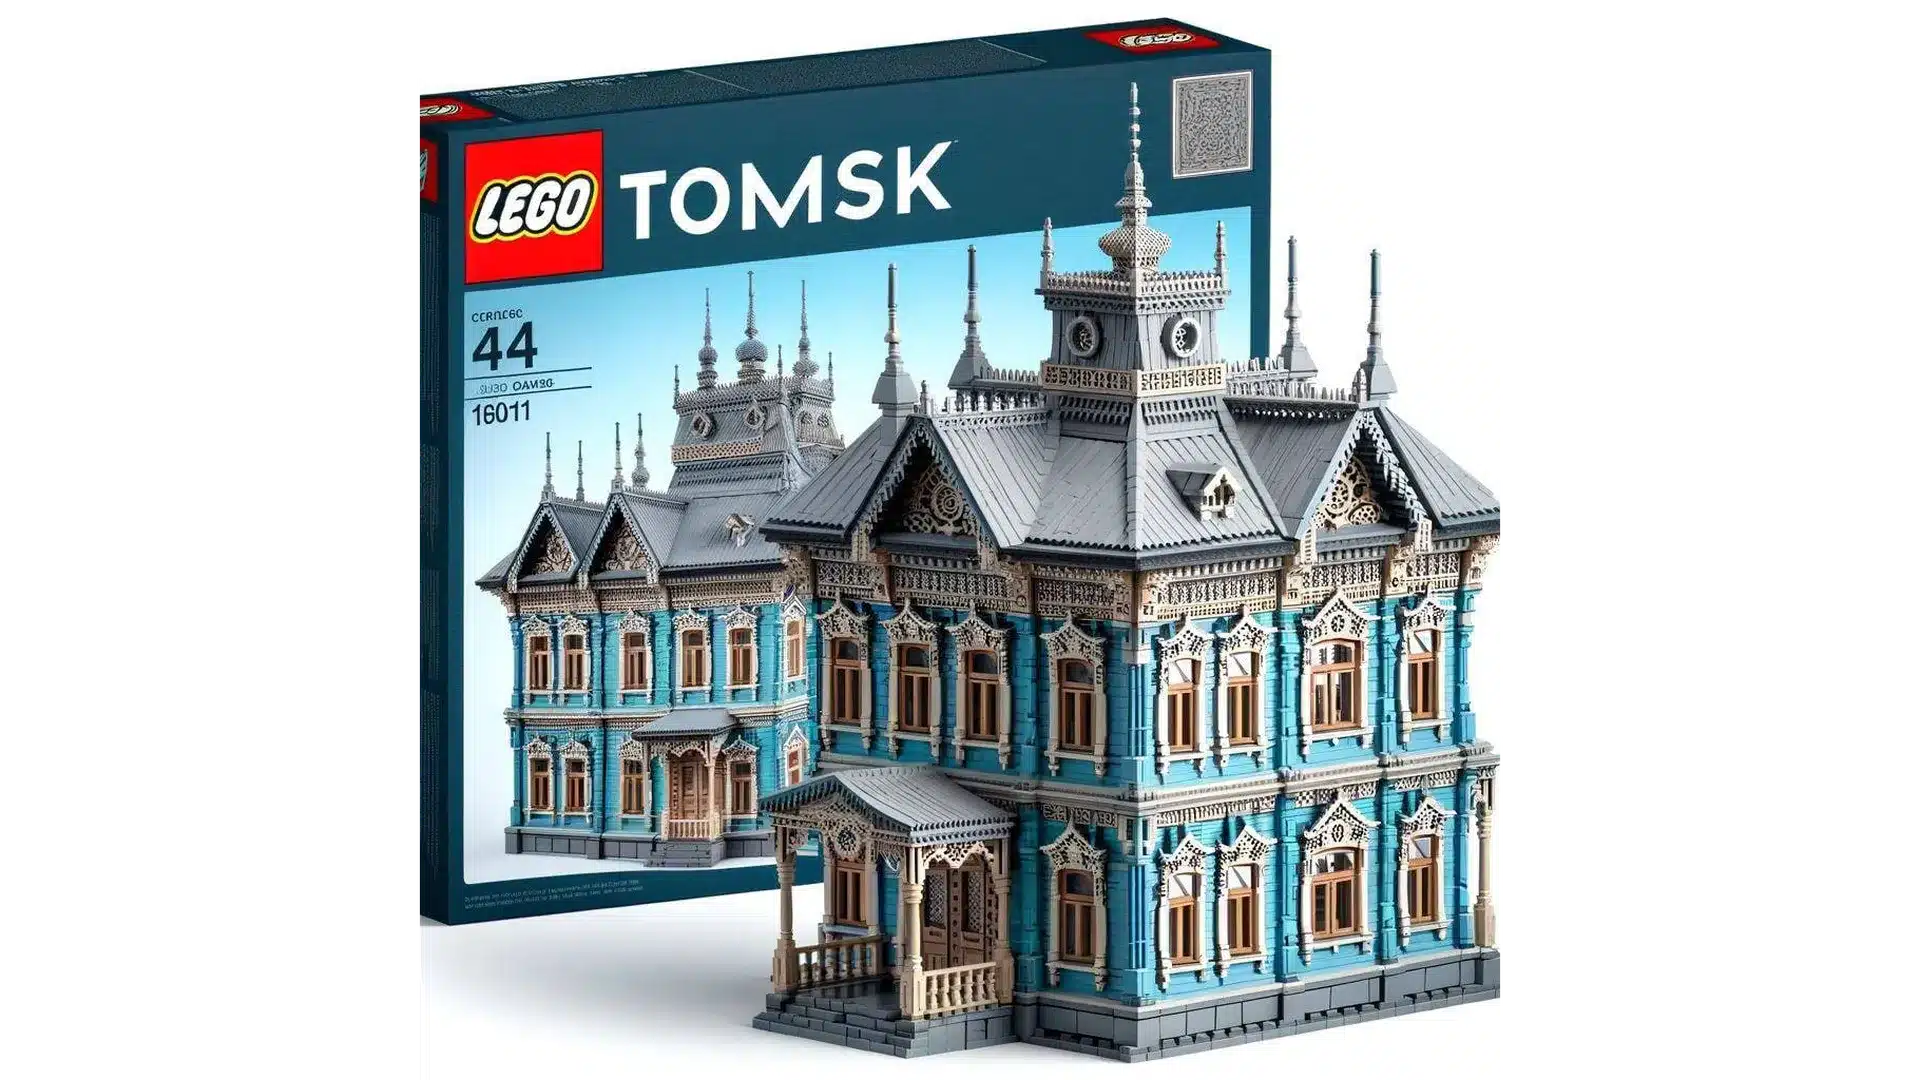 Разработчик создал уникальный концепт LEGO с деревянными домами Томска